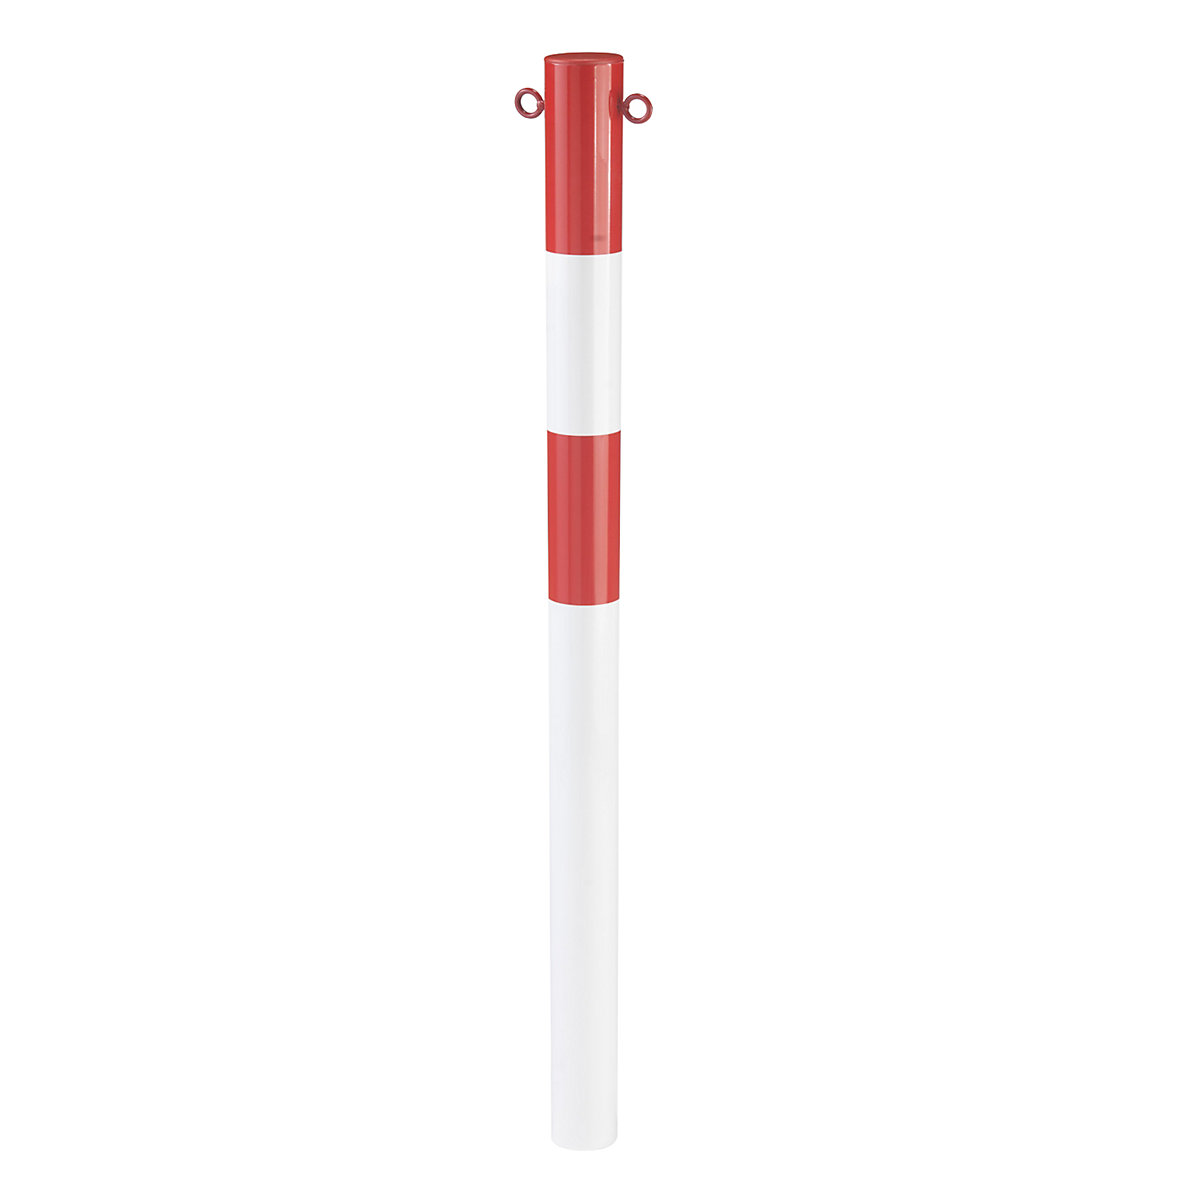 Zaporni stebrič iz jeklene cevi, vbetoniranje, Ø 76 mm, rdeča / bela, pocinkano in rdeče lakirano-2